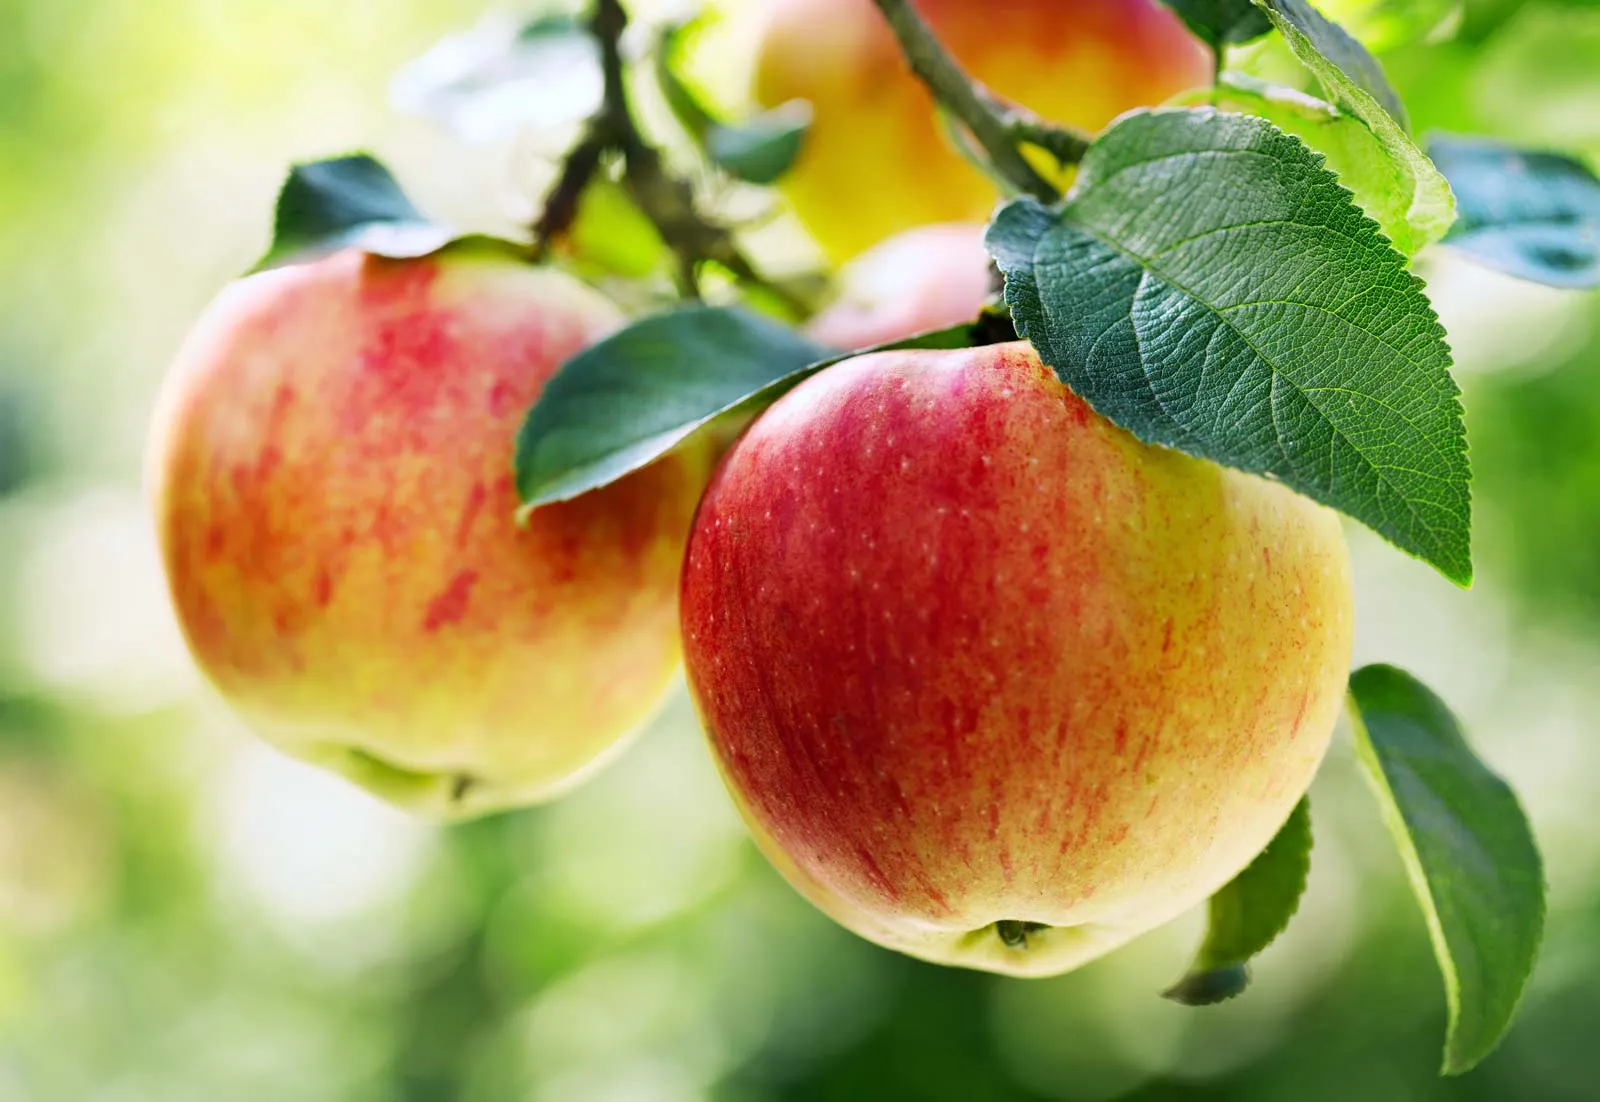 Введение в выращивание и орошение яблони